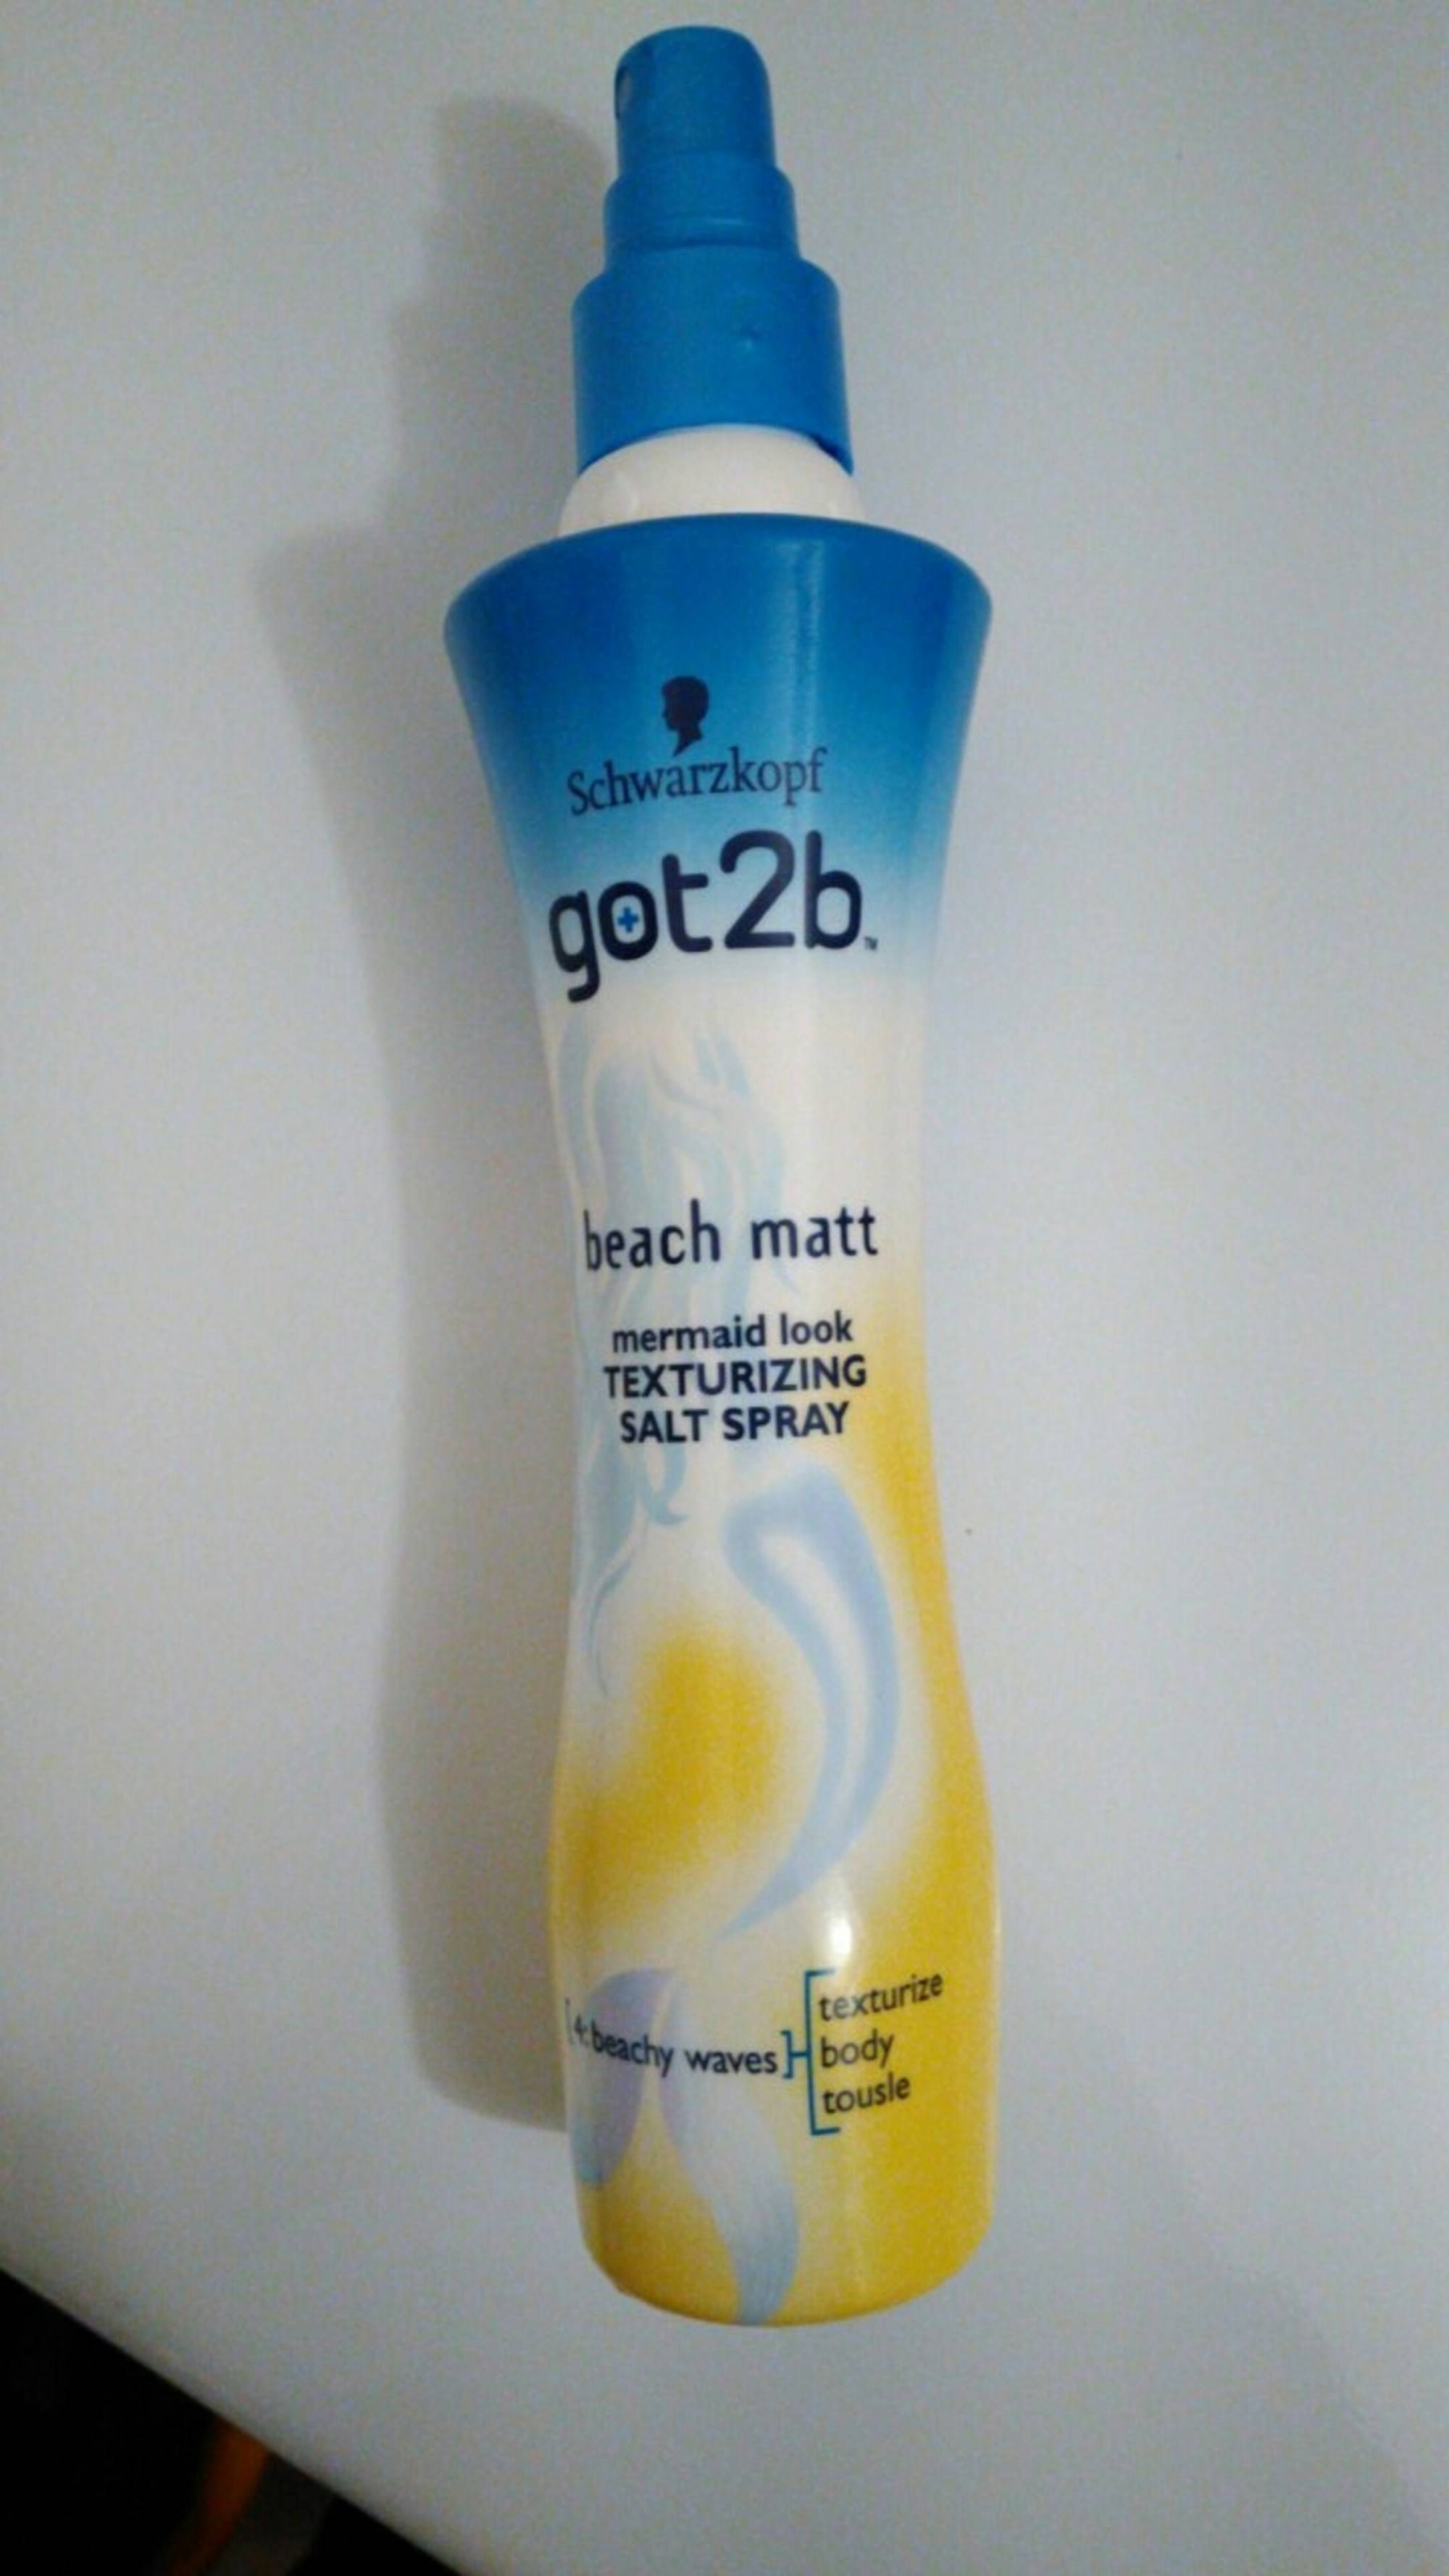 SCHWARZKOPF - Got2b beach matt - Texturizing salt spray